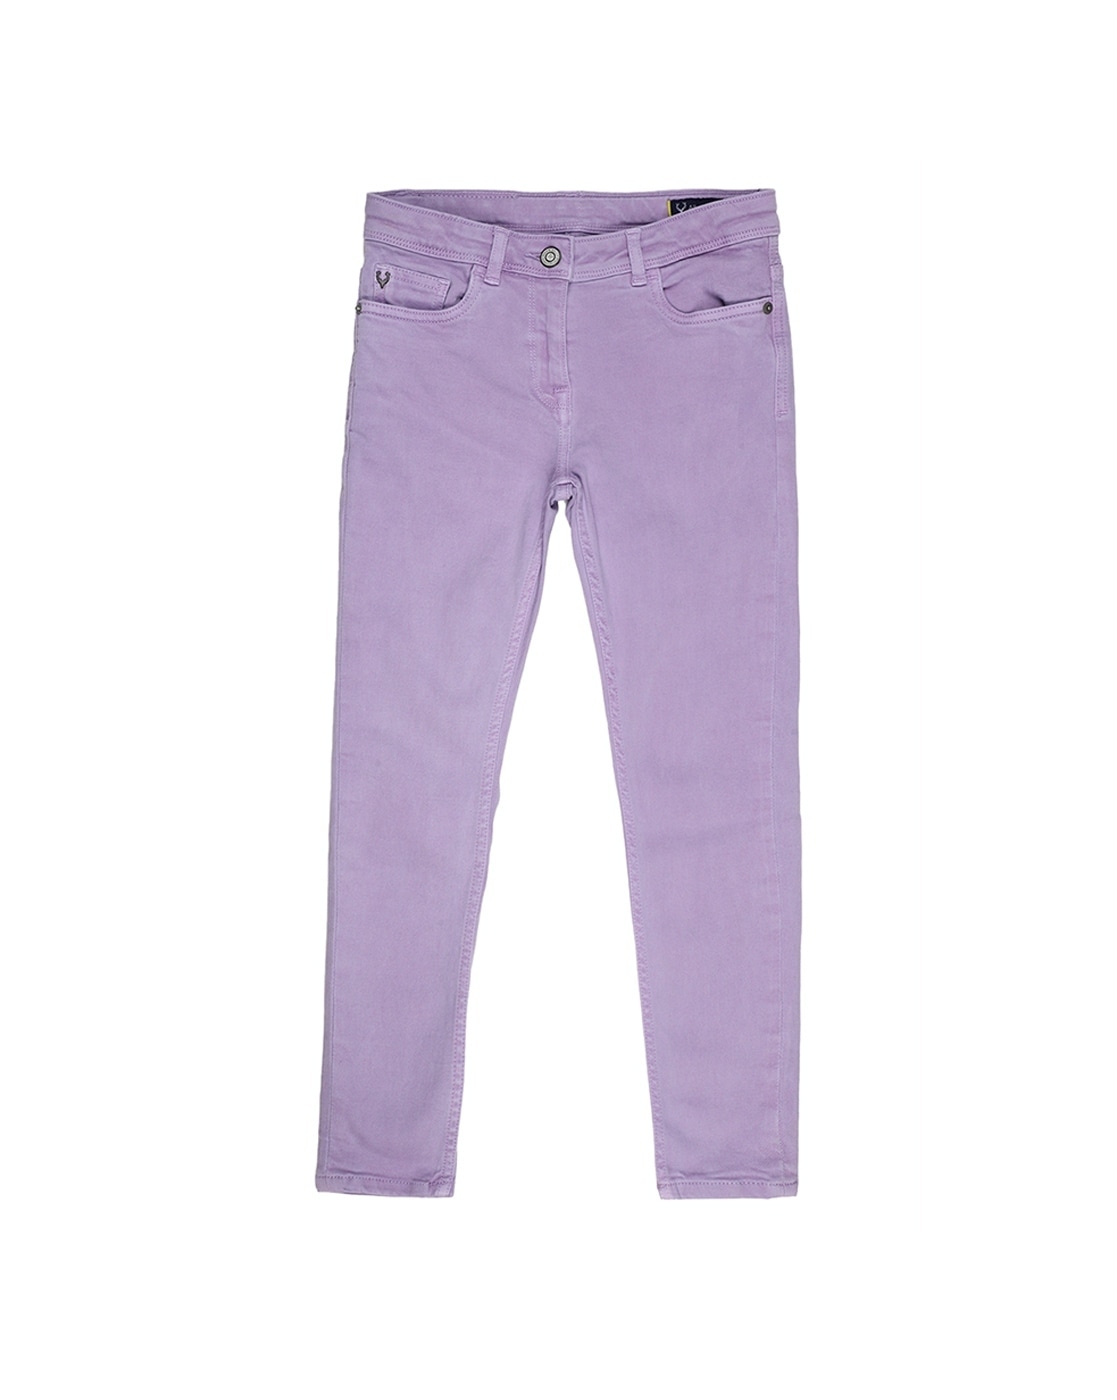 purple brand jeans 32 - DR Trouble